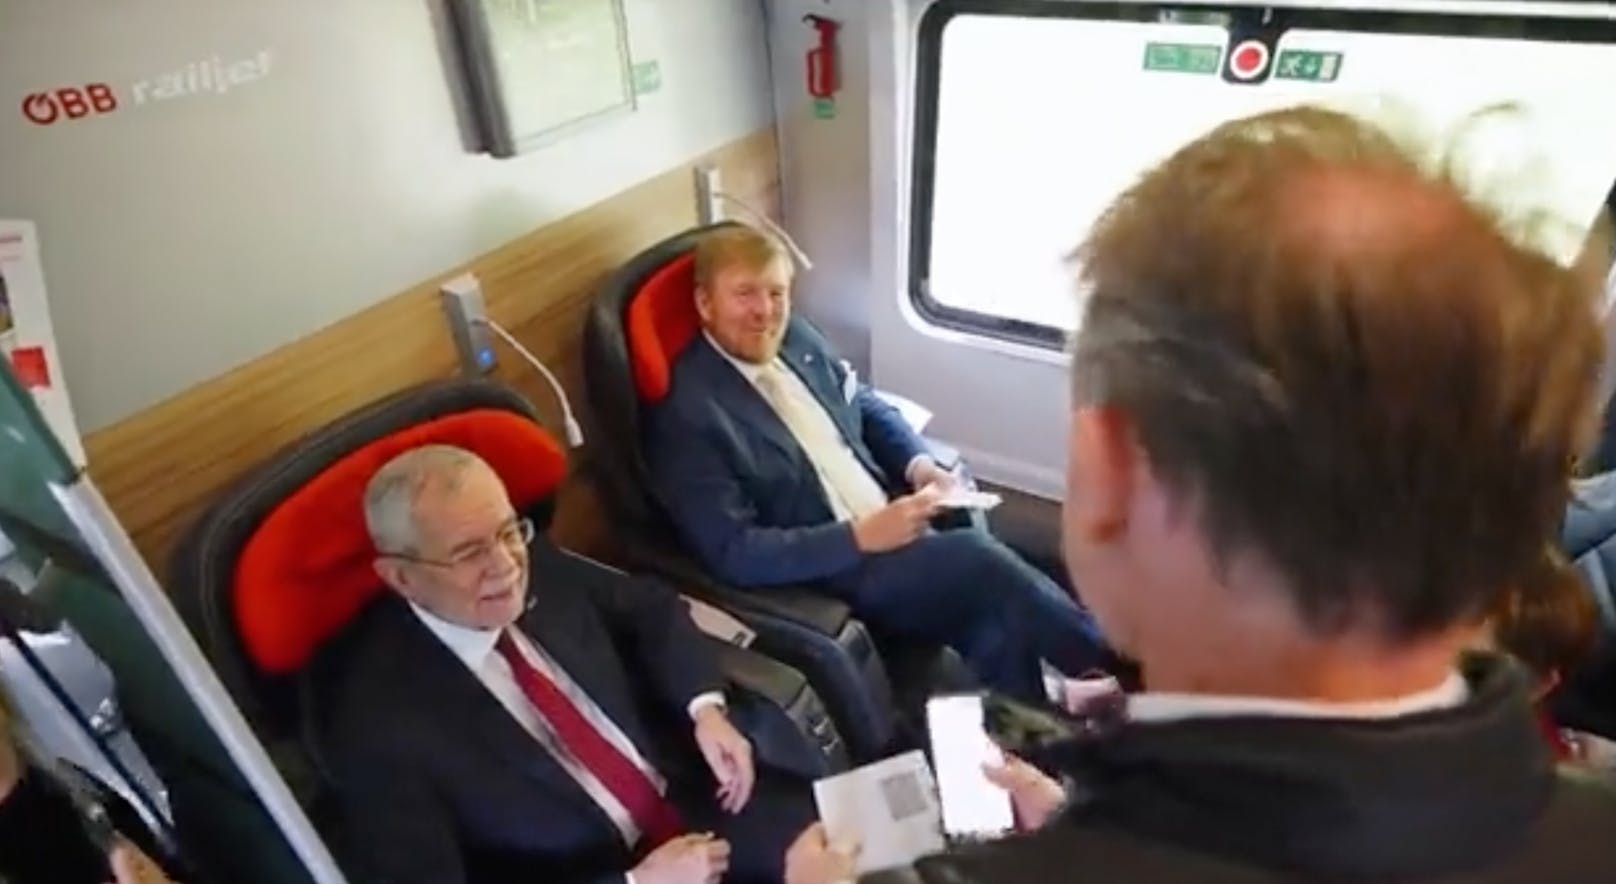 Nun wurde bekannt: Während Präsident VdB und Königs im Zug saßen, wurde die Limousinenflotte via Autobahn ins Steirische überstellt. Mindestens fünf Autos – darunter das des Präsidenten – will ein Twitter-User gezählt haben – "mit deutlich überhöhter Geschwindigkeit".